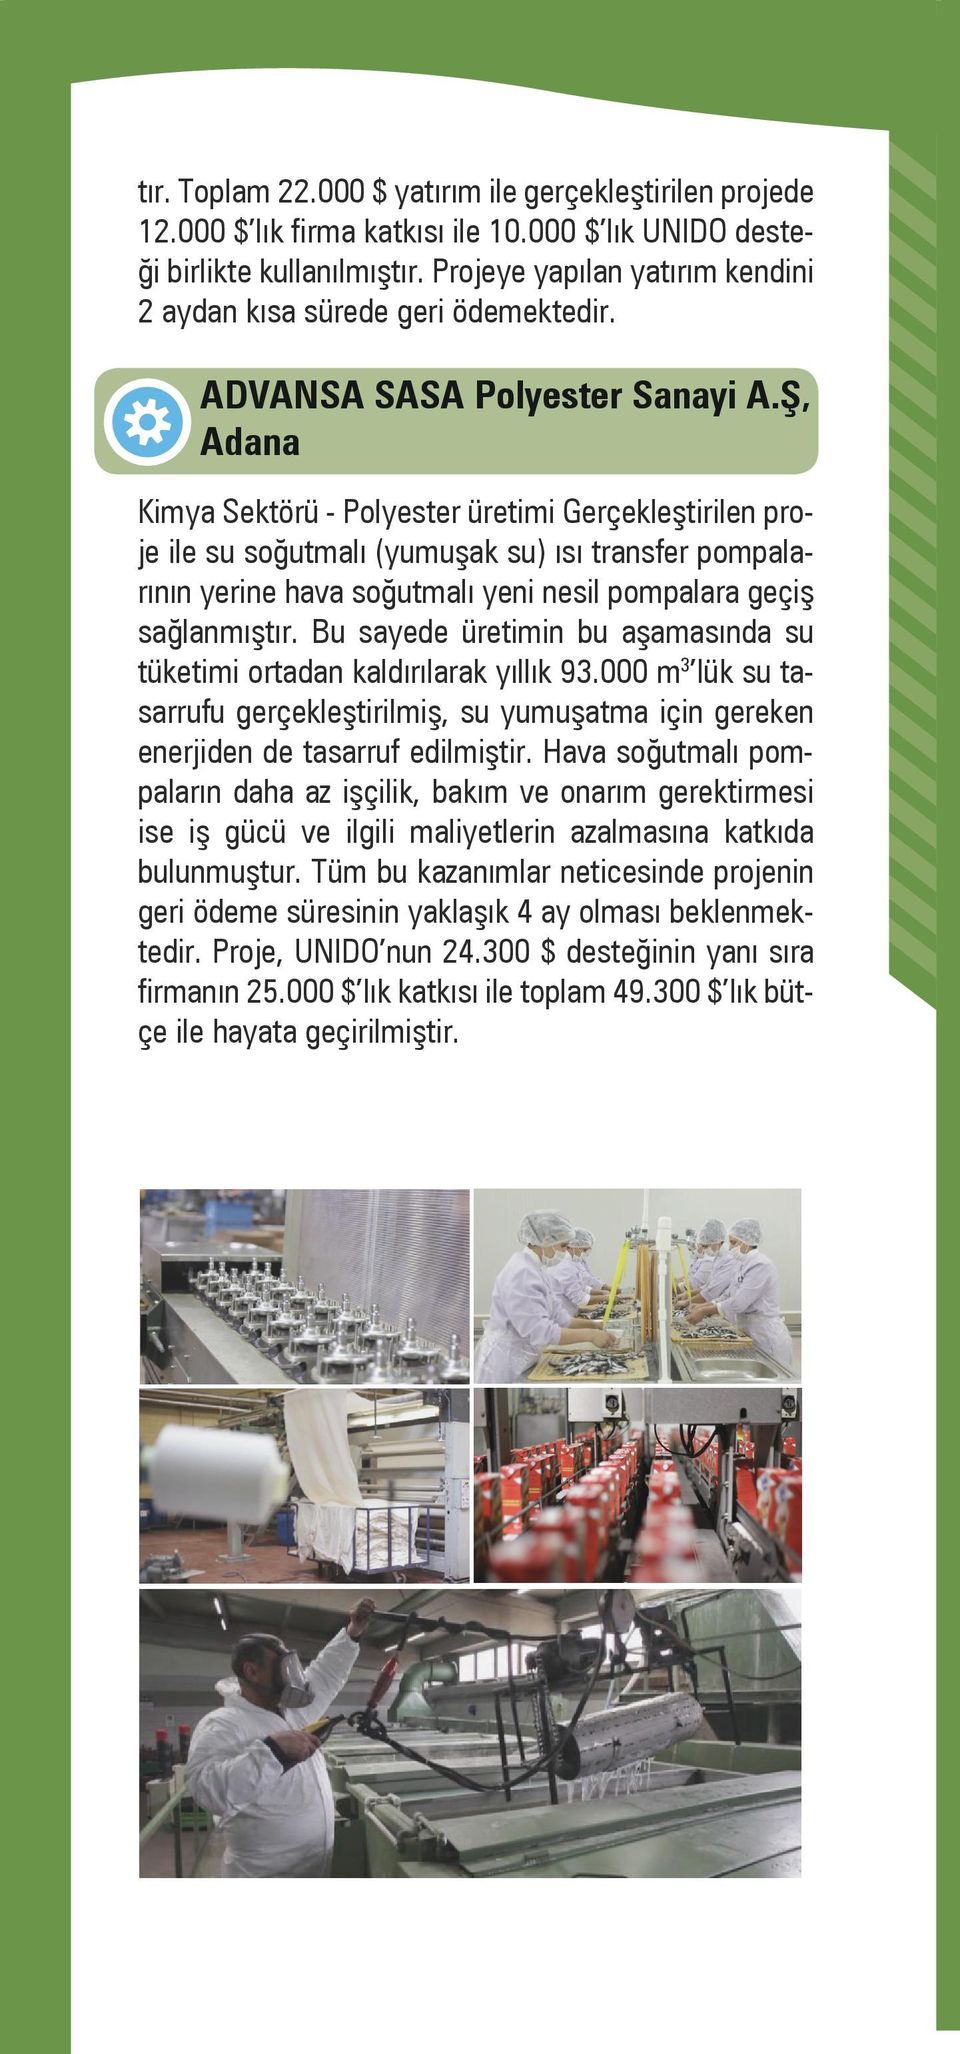 Ş, Adana Kimya Sektörü - Polyester üretimi Gerçekleştirilen proje ile su soğutmalı (yumuşak su) ısı transfer pompalarının yerine hava soğutmalı yeni nesil pompalara geçiş sağlanmıştır.